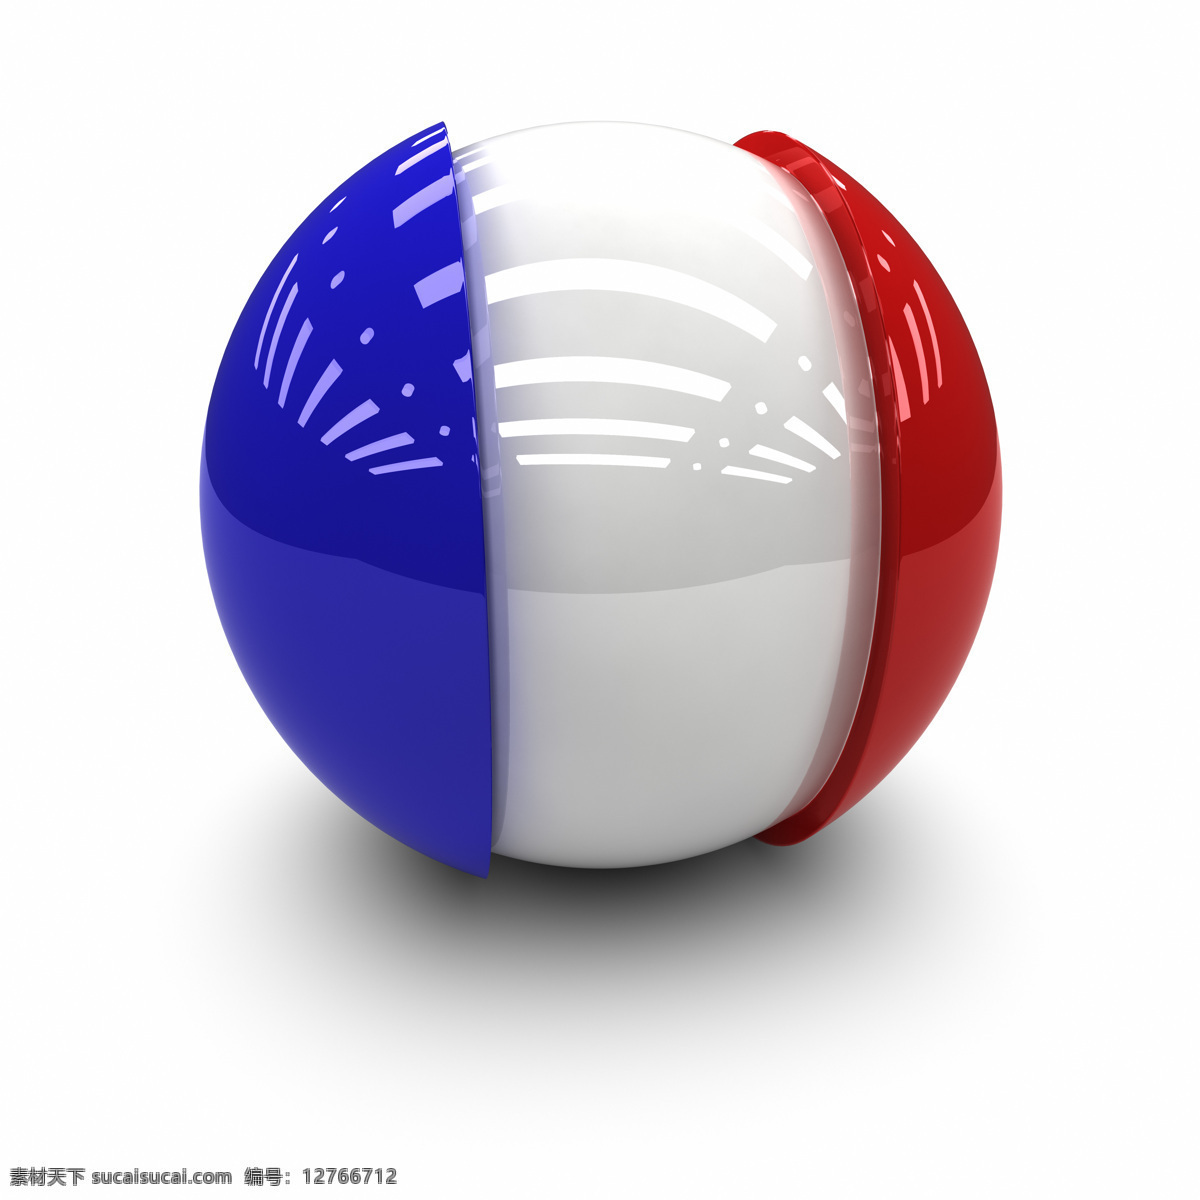 法国国旗 3d球体国旗 质感 国旗 各国国旗 旗帜 3d设计